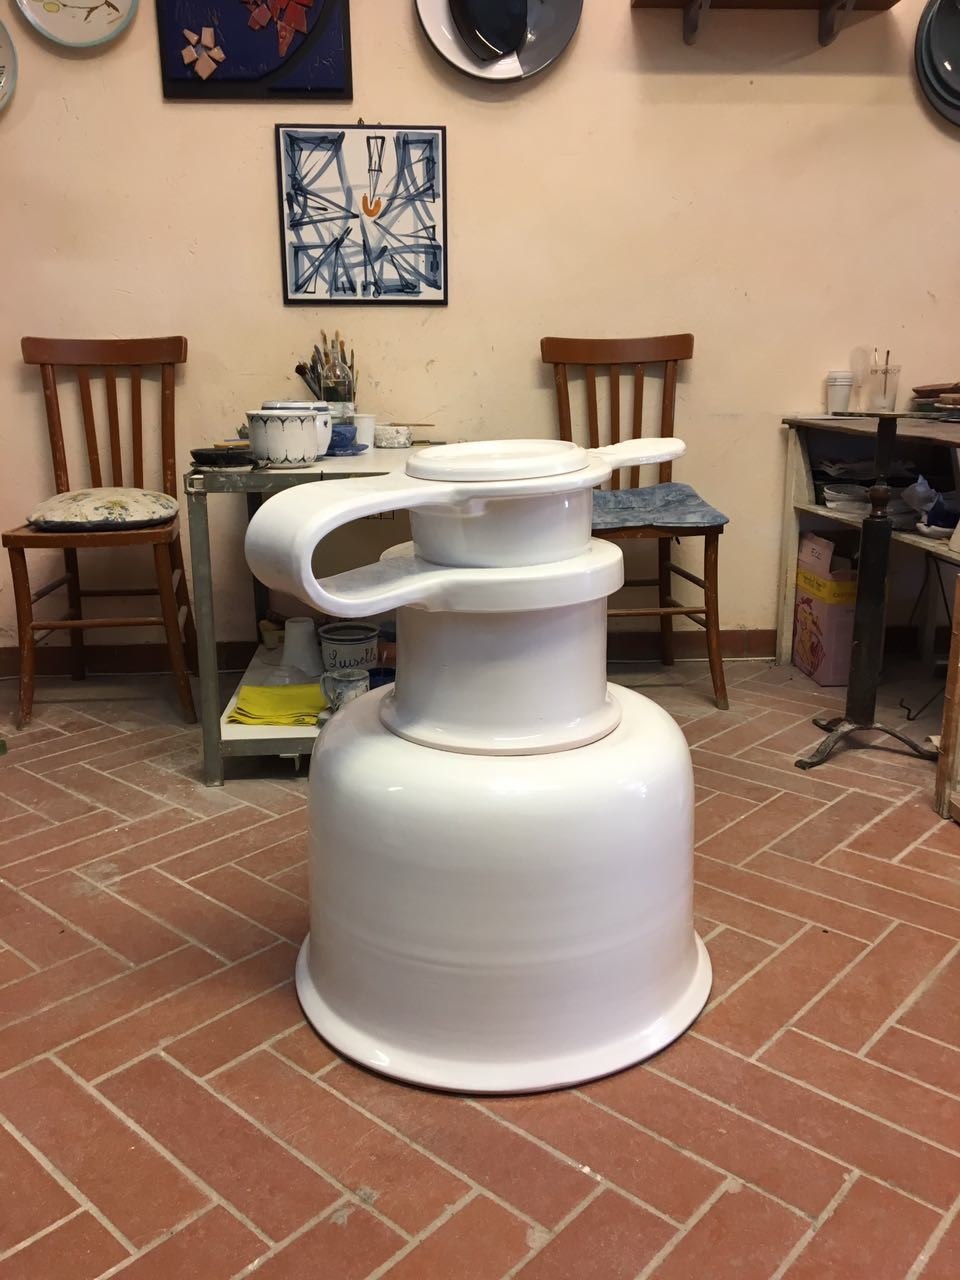 PLANET EARTH VALVE in preparazione per la mostra Ossimori con vista presso Ceramiche Pierluca. 2017.